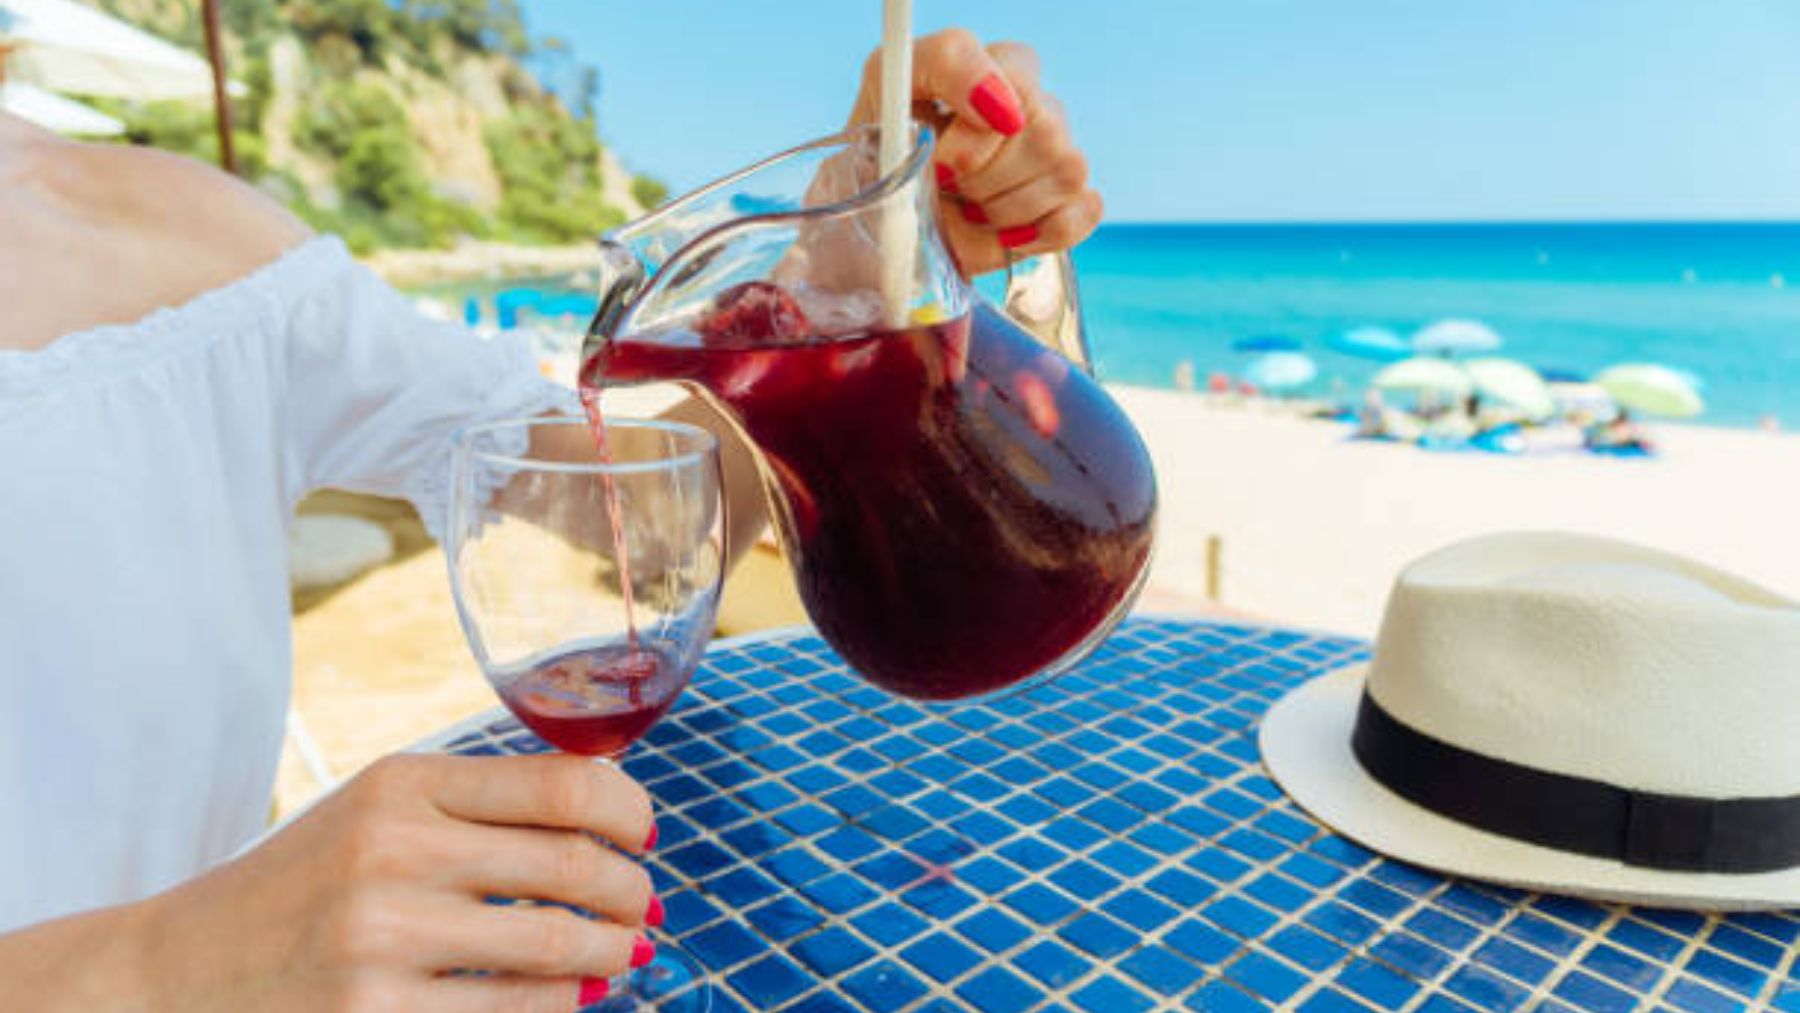 Los 8 mejores chiringuitos de toda España para comer y beber en la playa